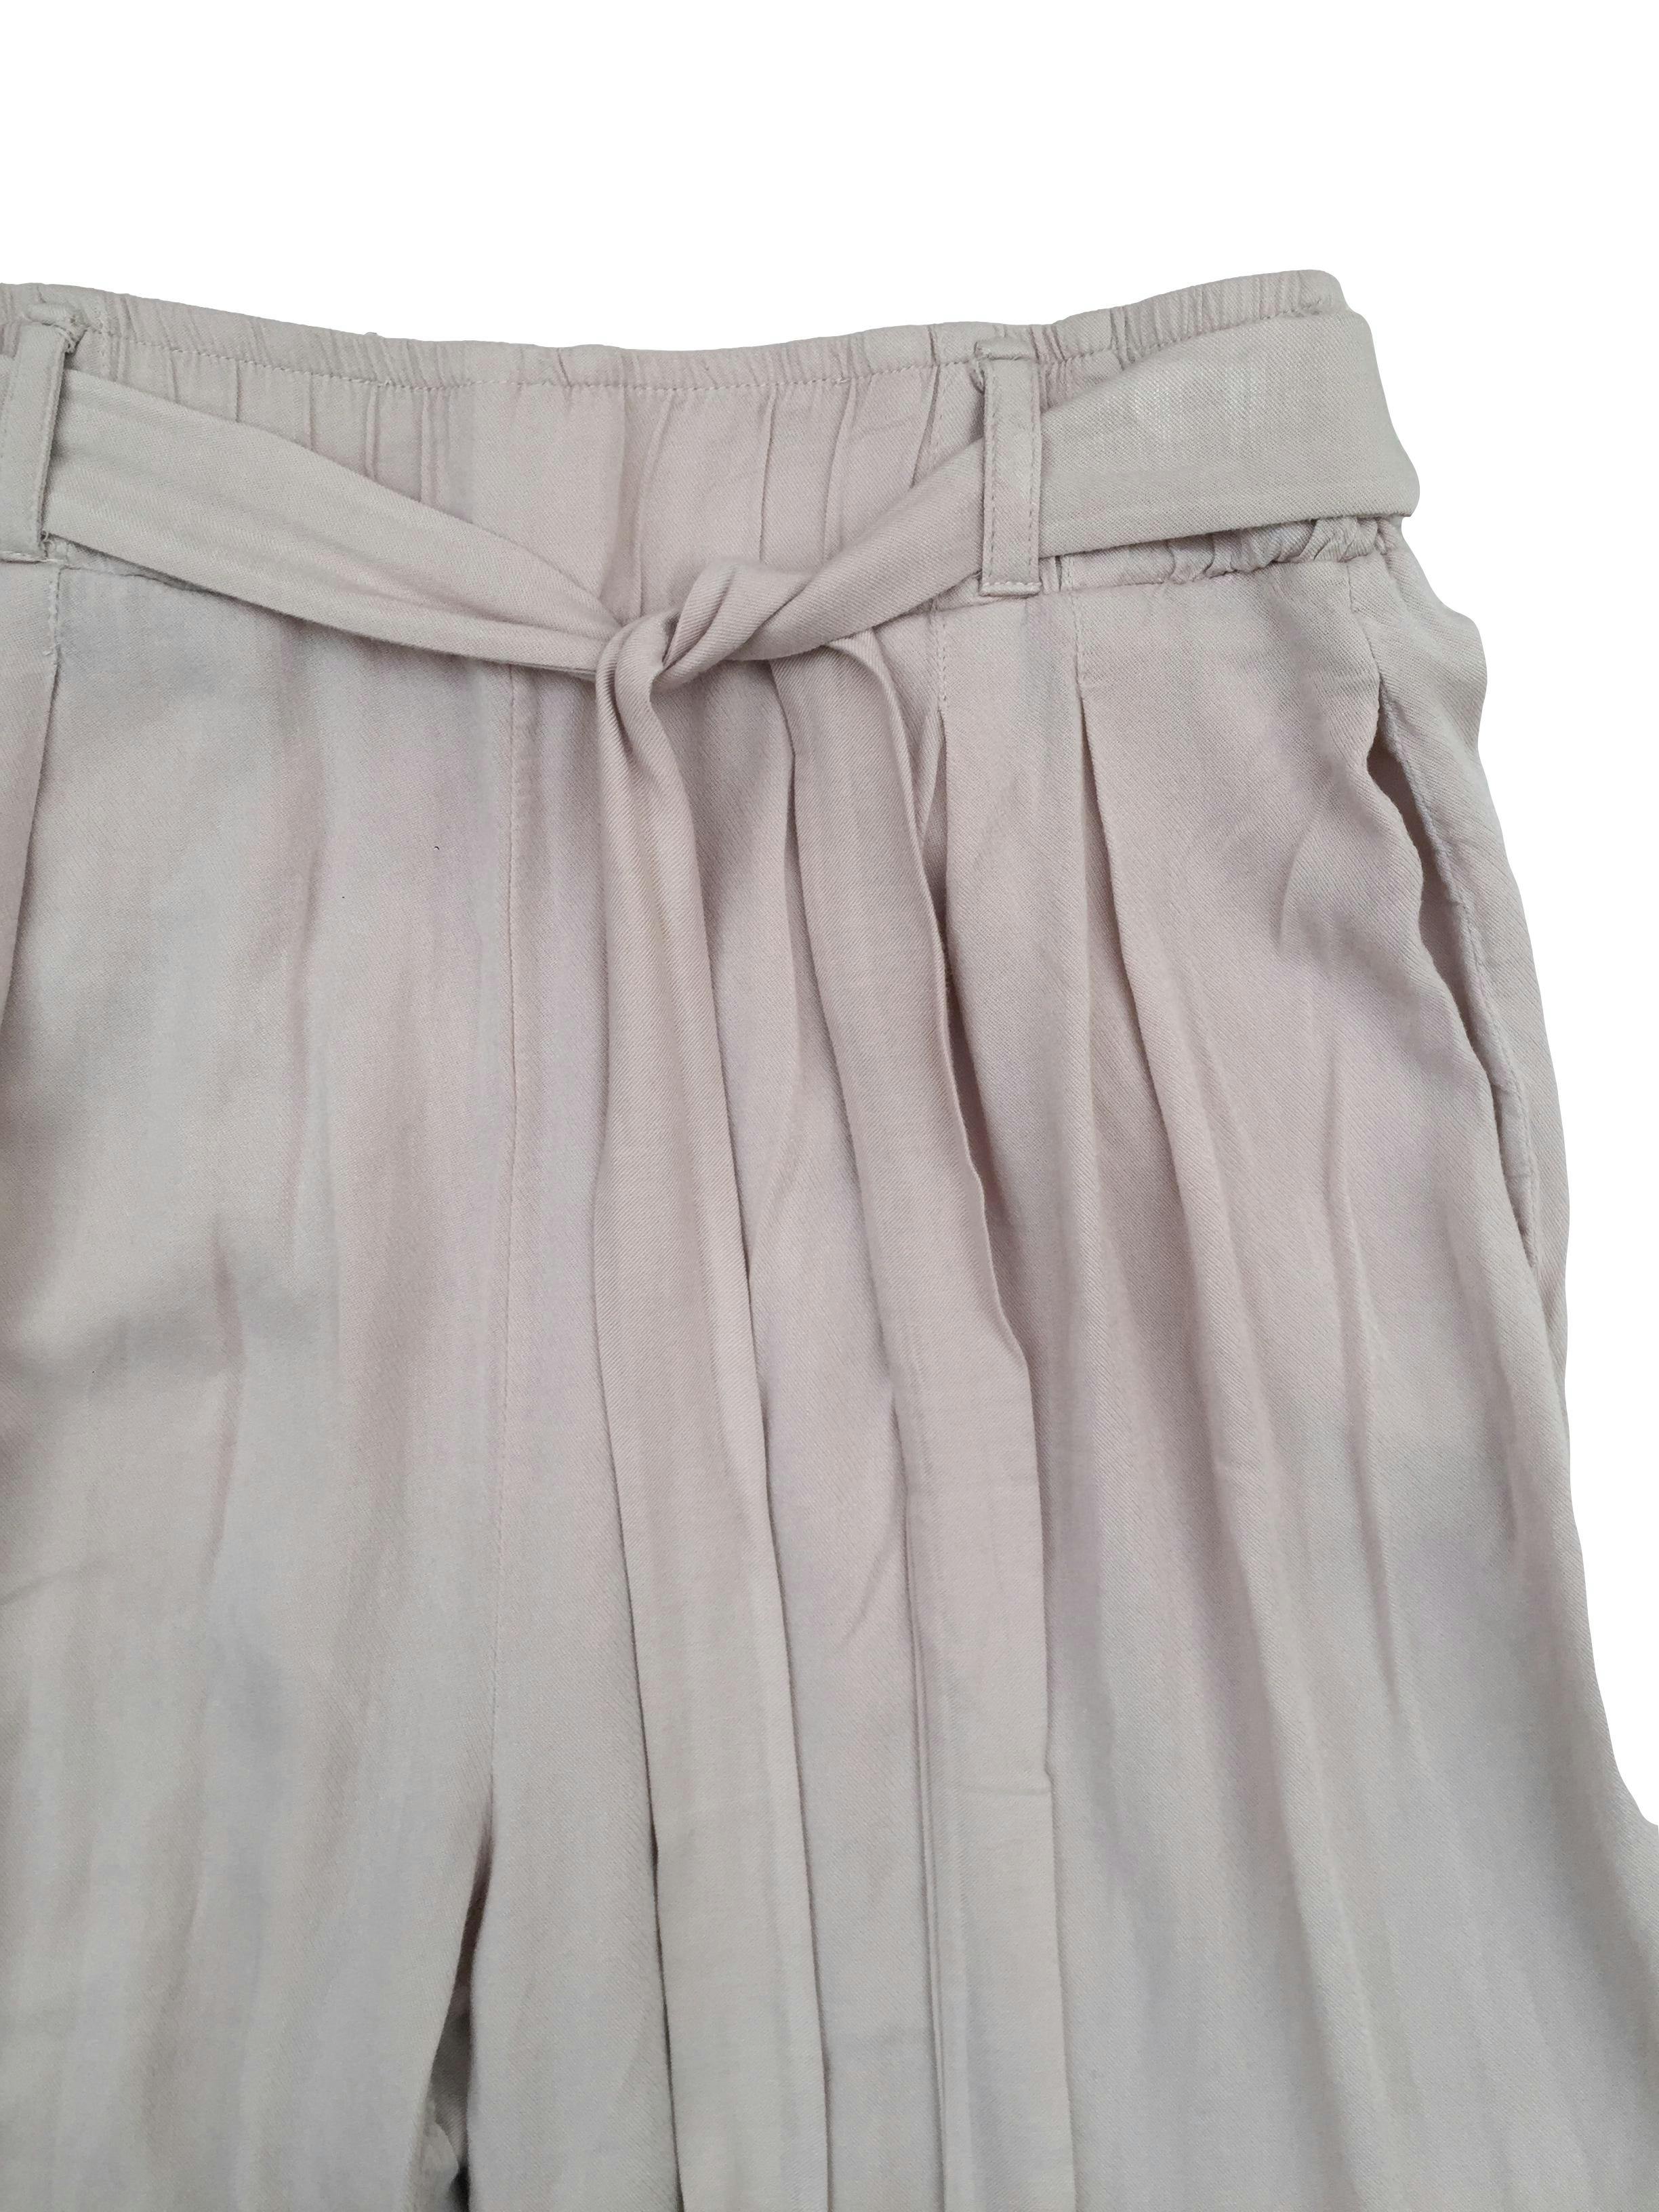 Pantalón culotte beige de tela fresca, pretina elástica con cintos y bolsillos. Cintura 66cm sin estirar, Largo 72cm.